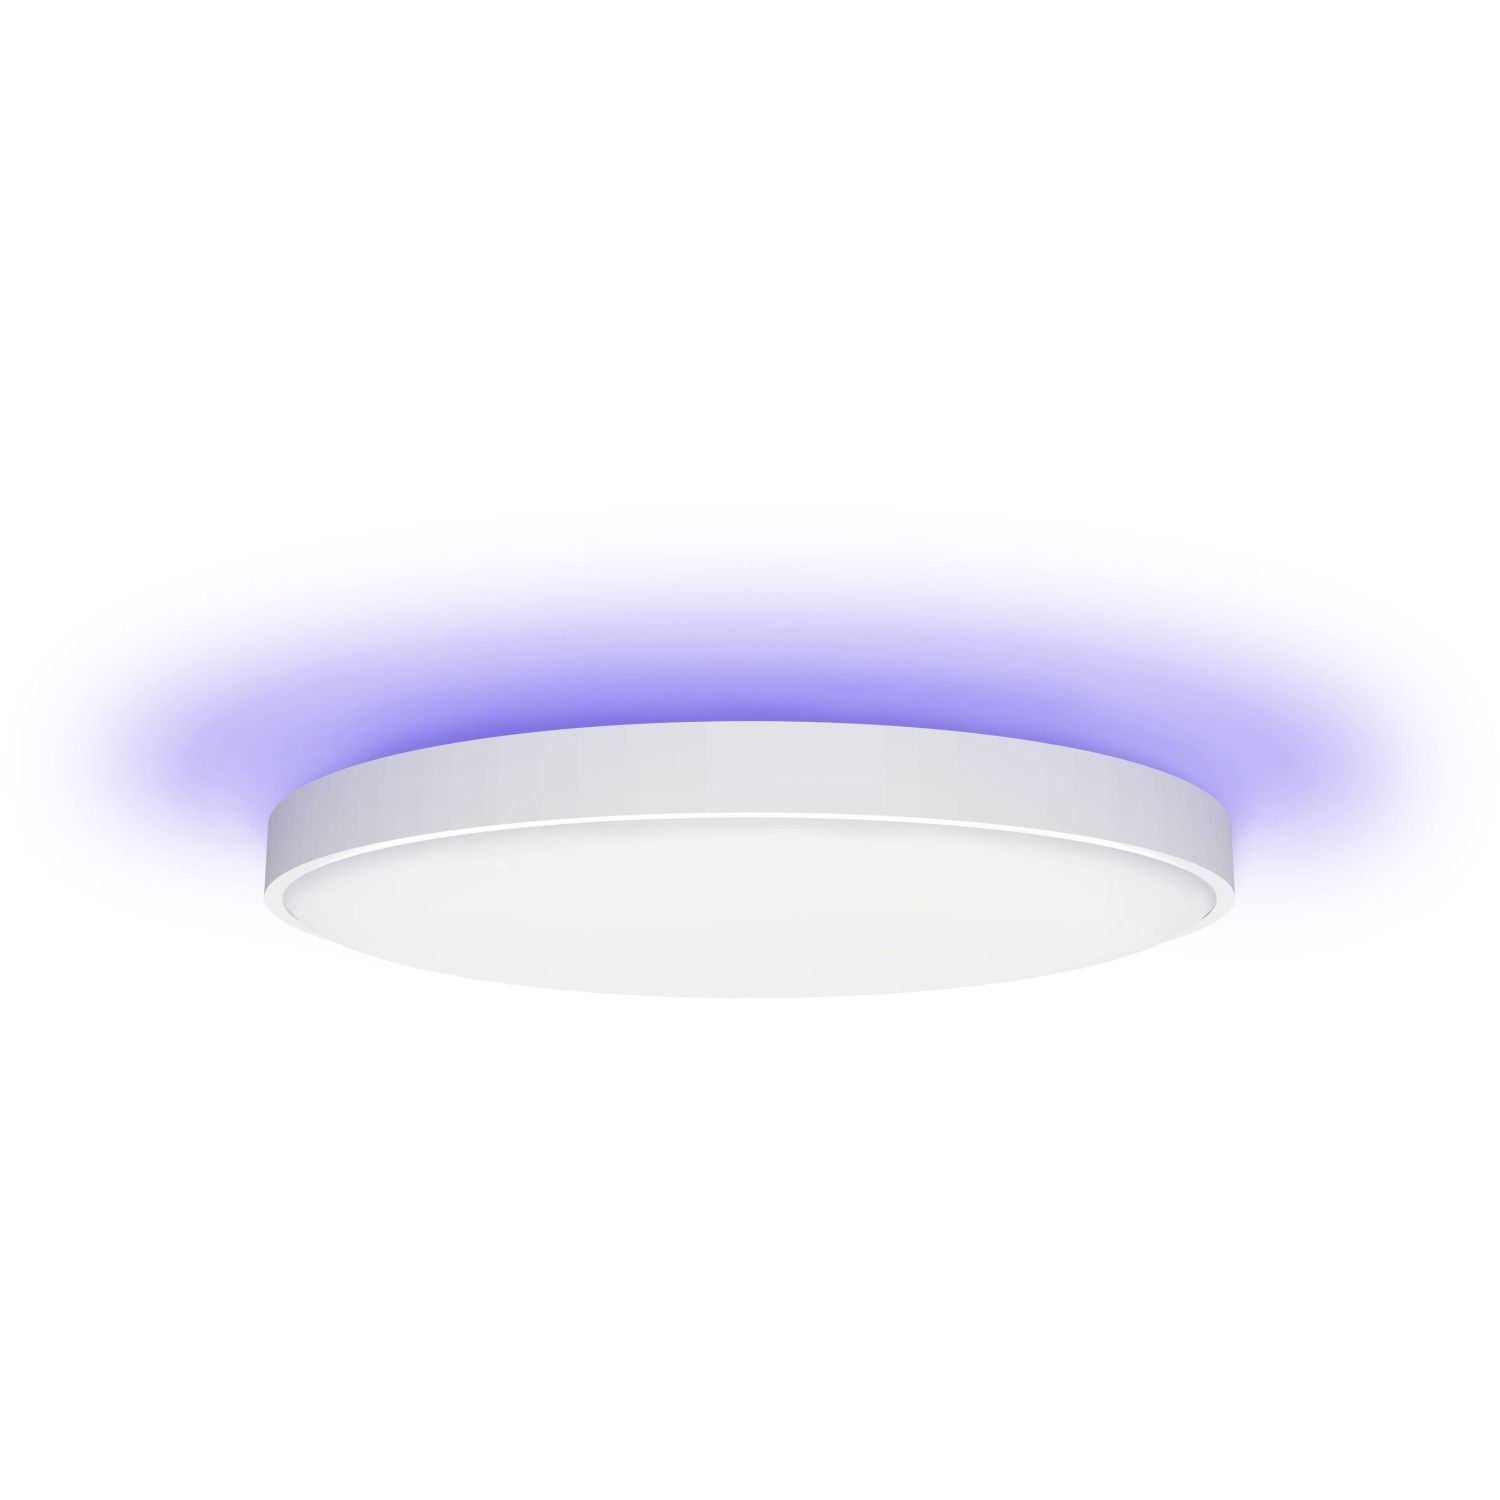 Светильник потолочный Yeelight Arwen Ceiling Light 550S умный, YLXD013-A